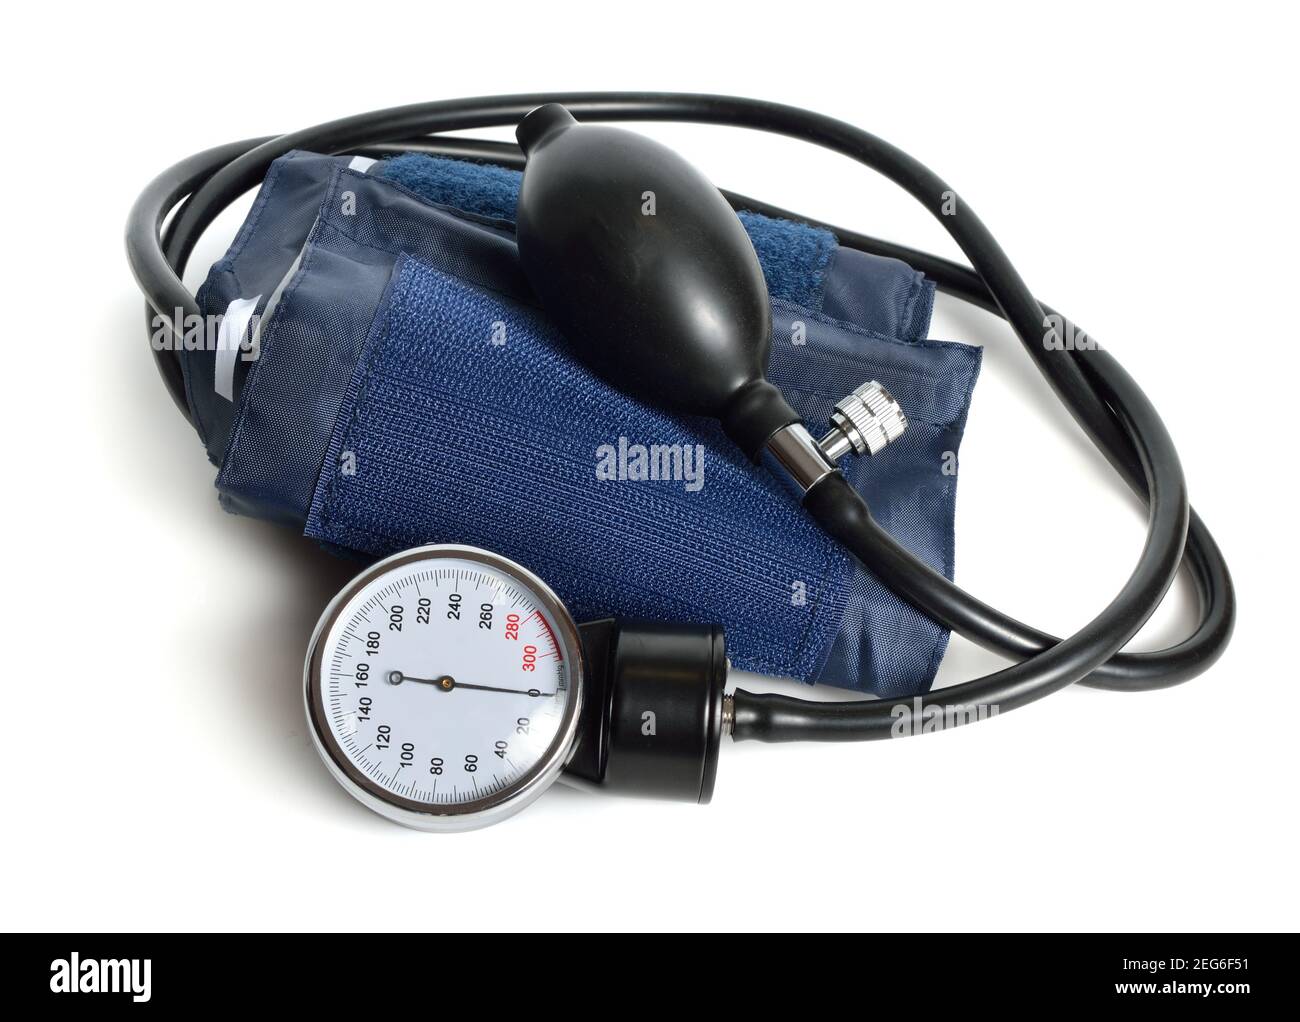 Uno sfigmomanometro, noto anche come monitor della pressione sanguigna, o manometro della pressione sanguigna. Isolato su sfondo bianco Foto Stock